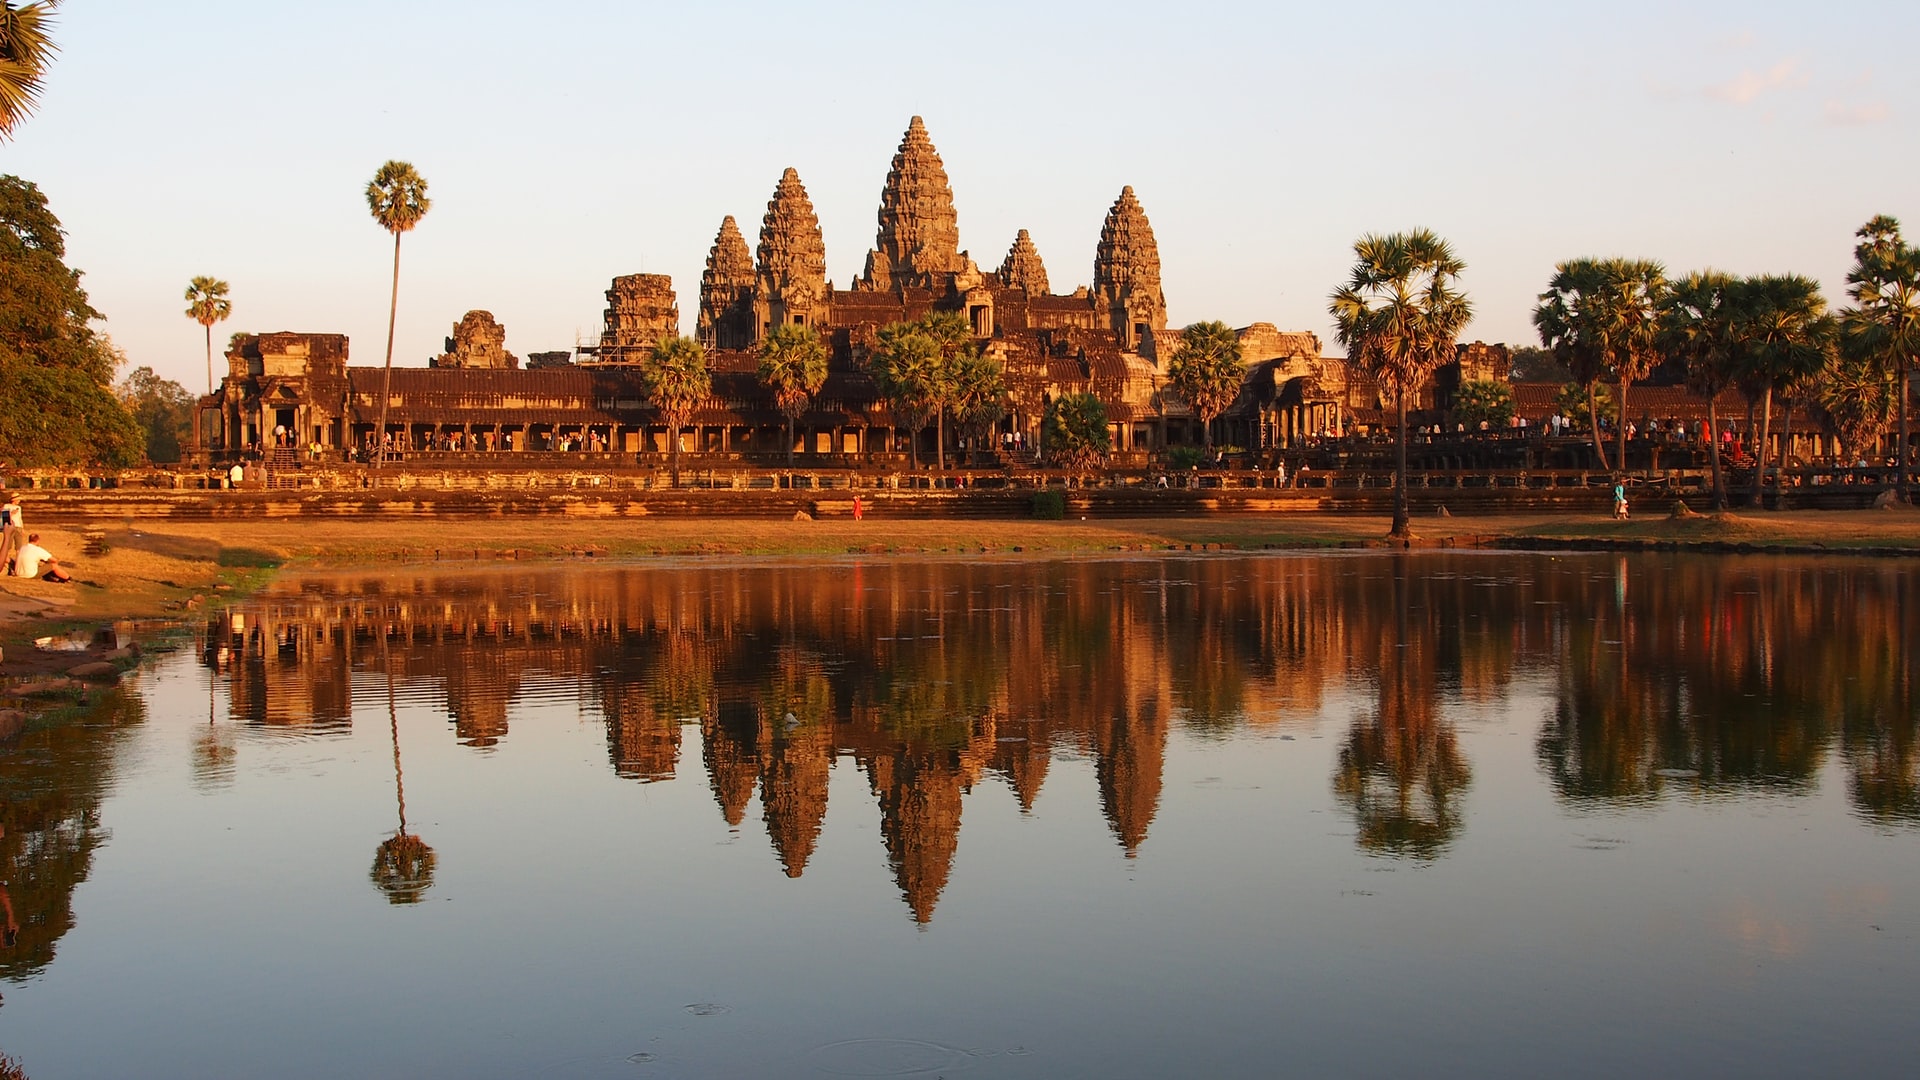 Dünya'nın en büyük dini yapısı - Angkor Wat, Kamboçya